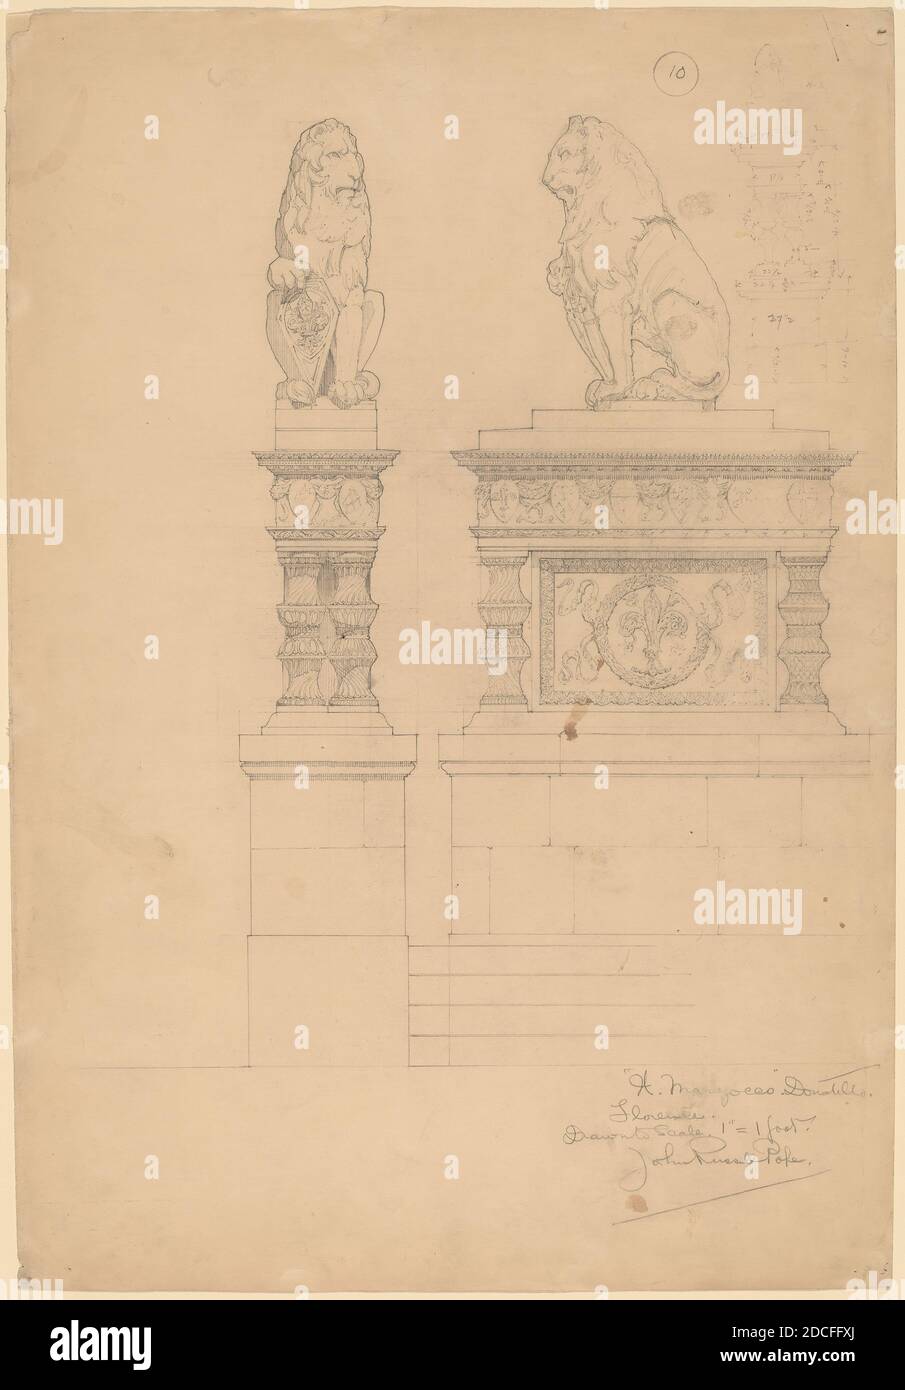 John Russell Pope, (artist), American, 1874 - 1937, Il Marzocco, Donatello, Architectural Studies, (series), c. 1896, graphite, overall: 48.3 x 33.1 cm (19 x 13 1/16 in Stock Photo